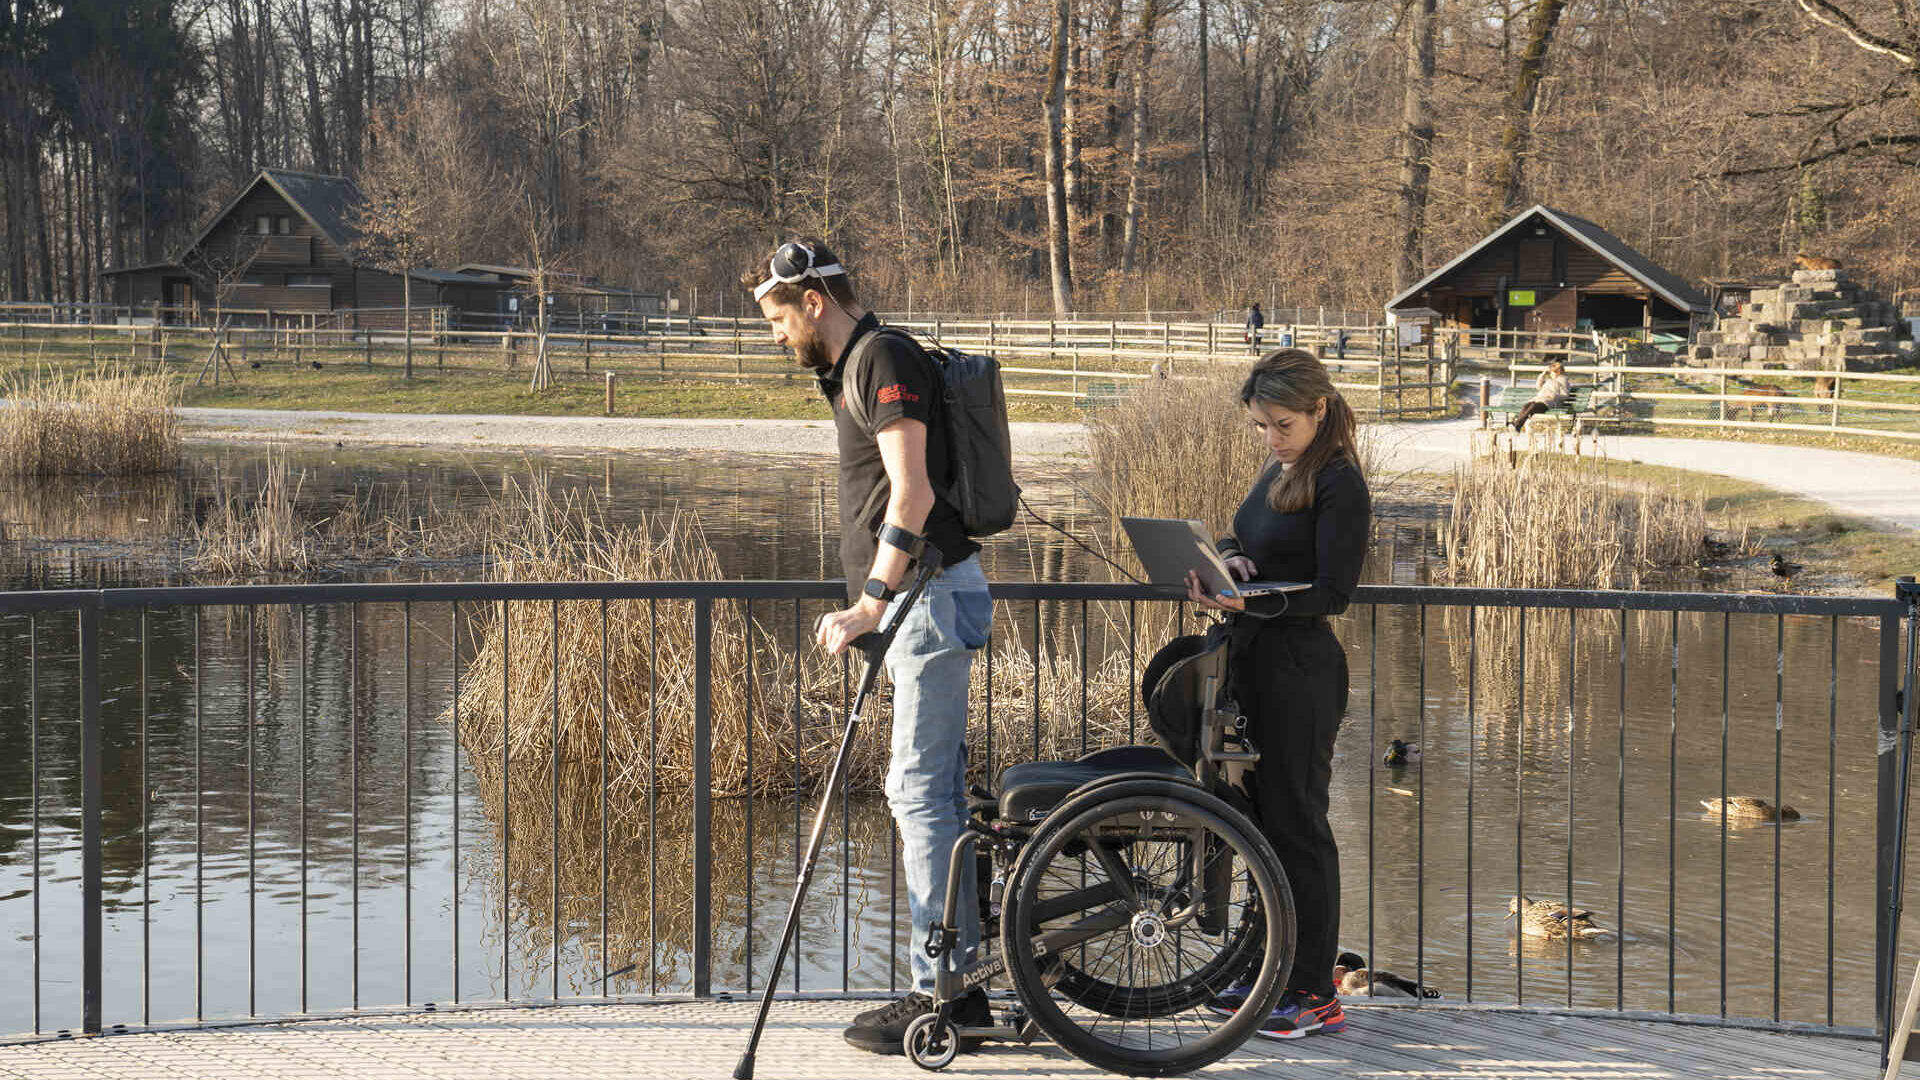 Camminare grazie al pensiero: Gert-Jan Oskam, rimasto paralizzato agli arti inferiori in seguito a un incidente in bicicletta, ha ripreso a camminare grazie a un ponte digitale fra cervello e midollo spinale